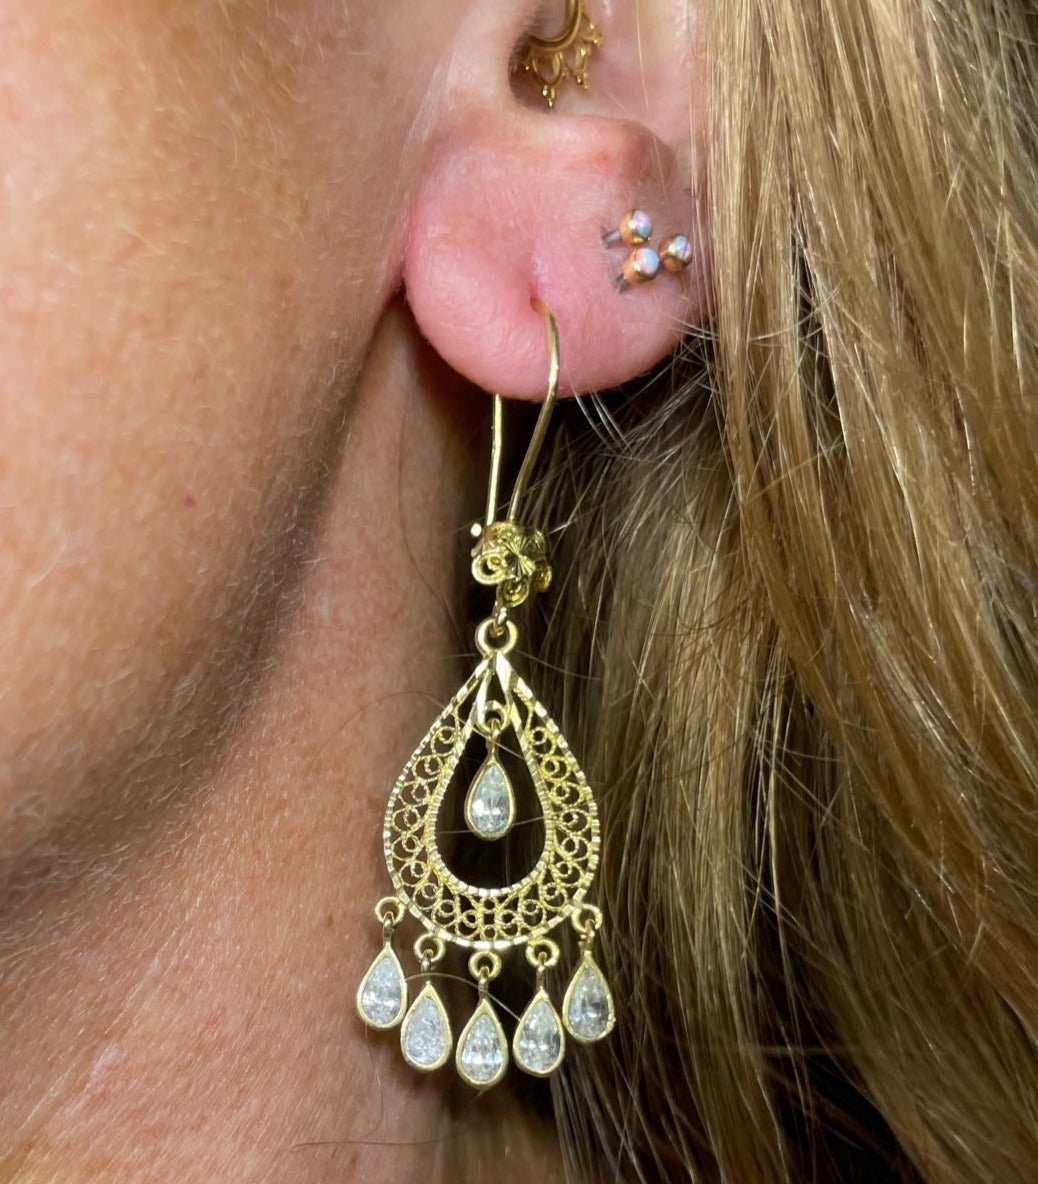 14k Yellow Gold Chandelier Gypsy Teardrop Earrings. 2"